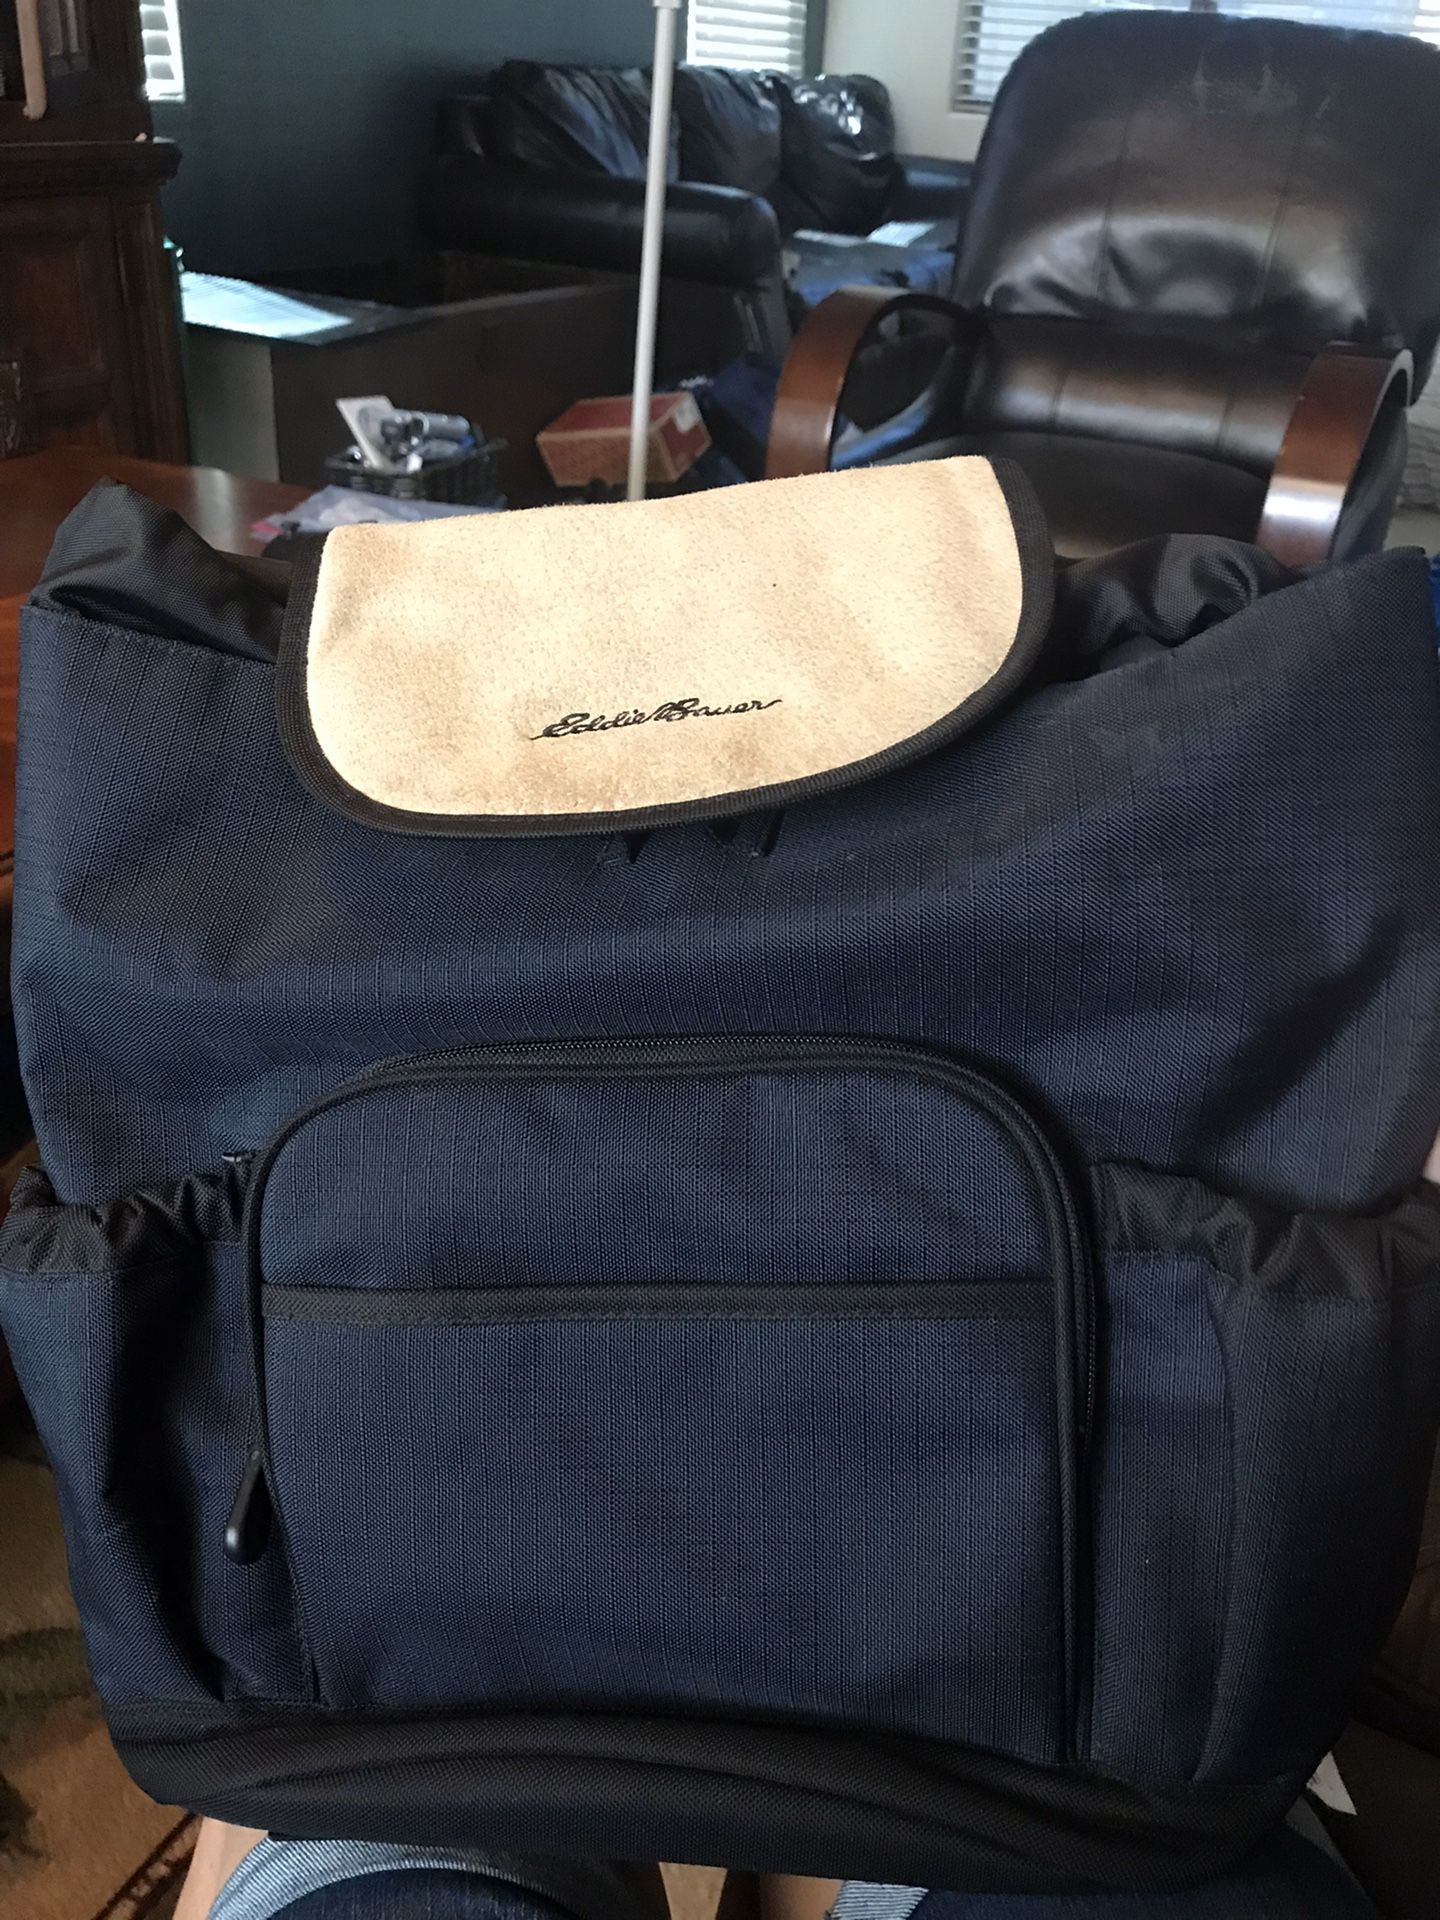 Eddie Bauer Dark Navy Blue with Tan Leather Flap School or Work Backpack Book Bag